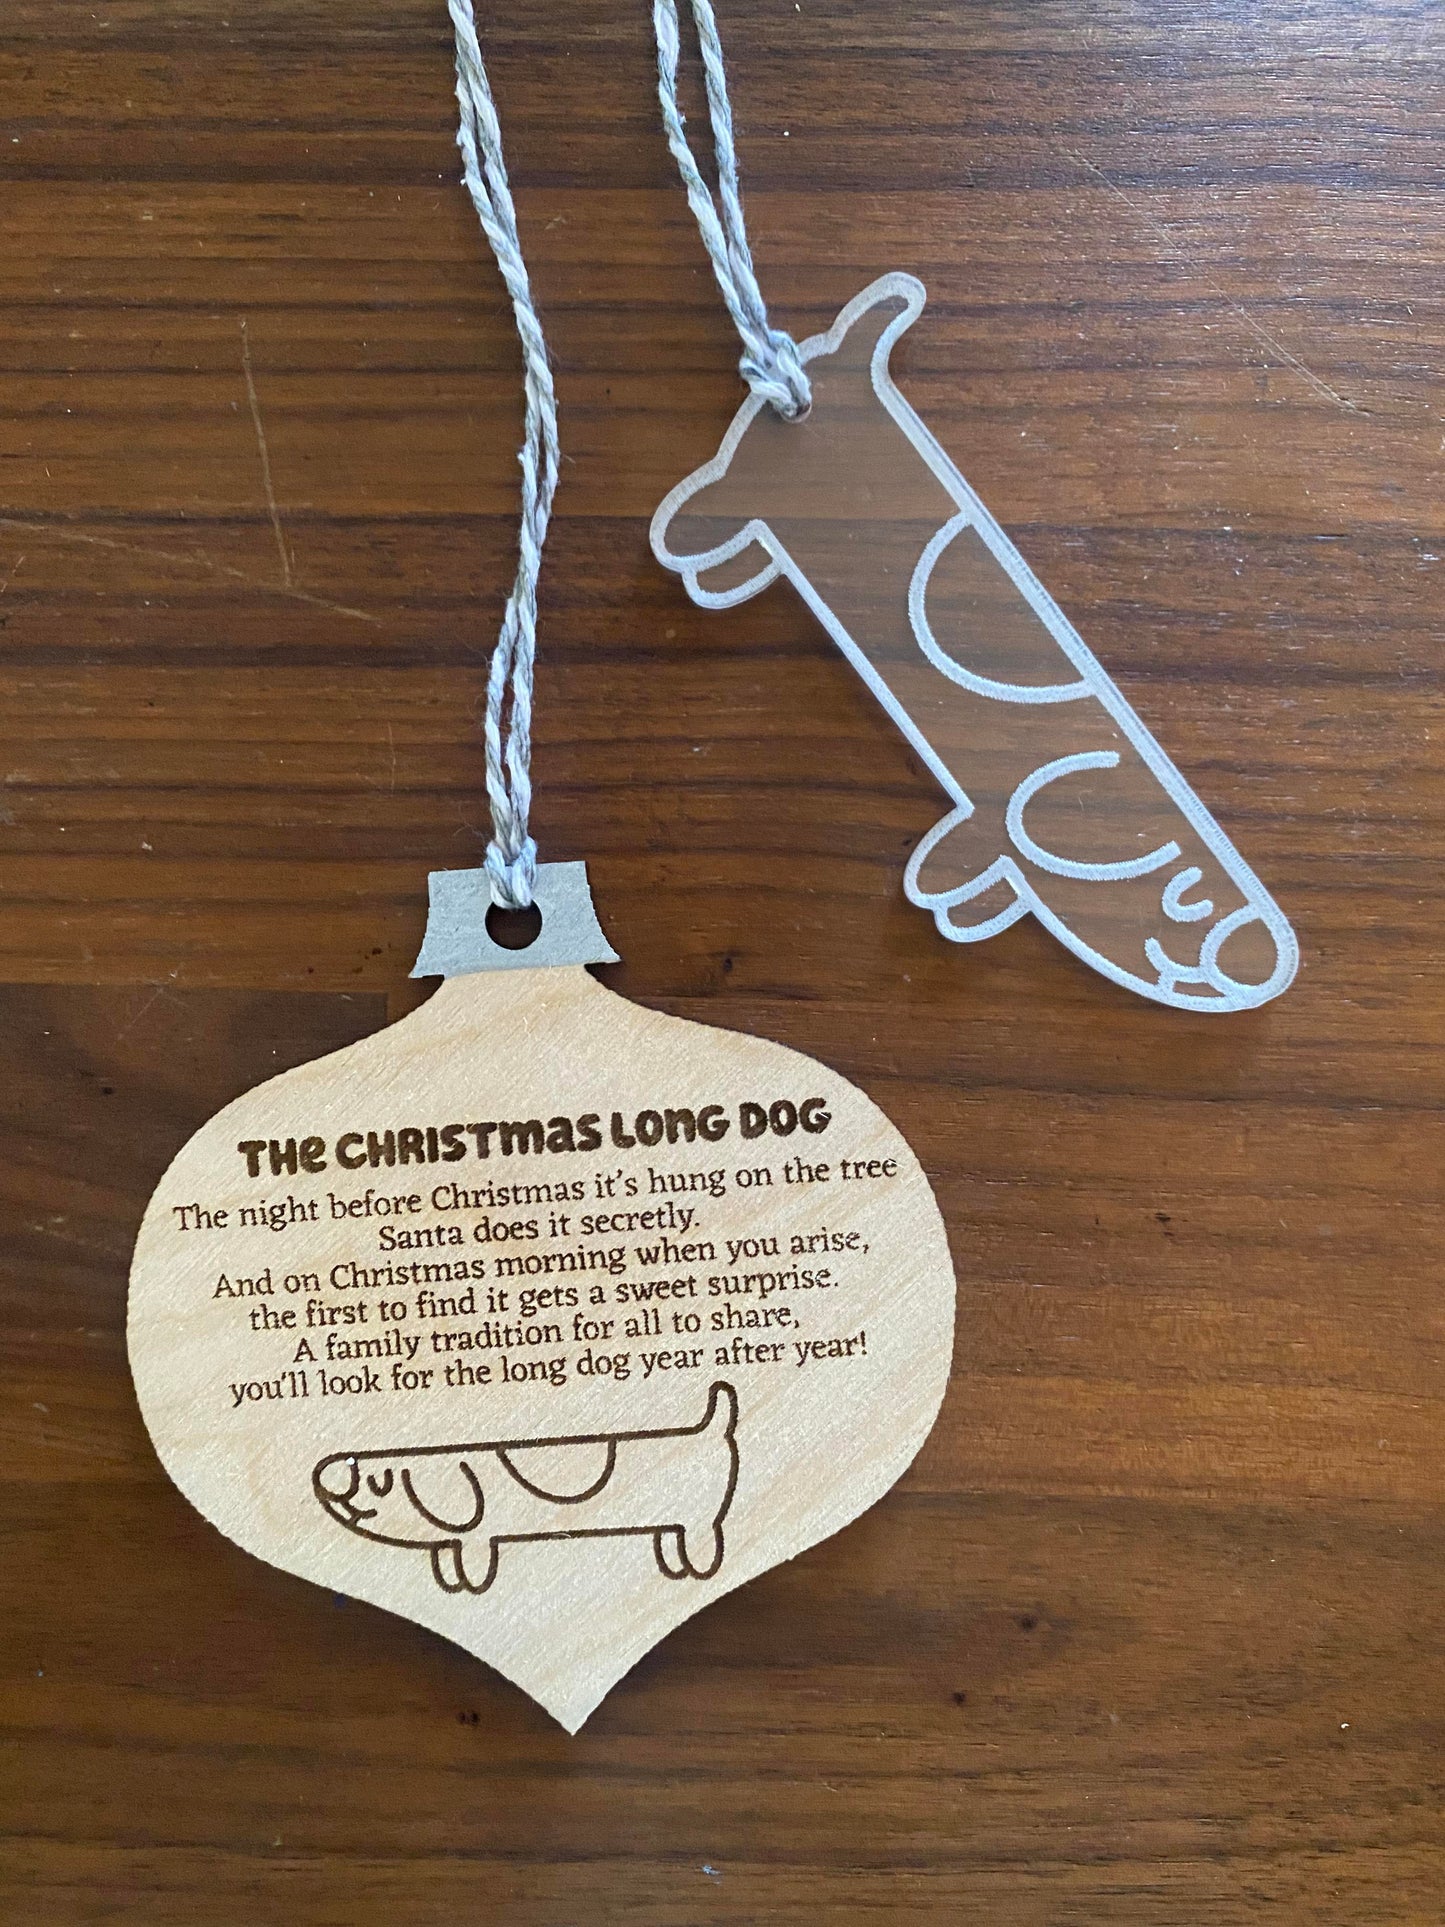 Long dog ornaments